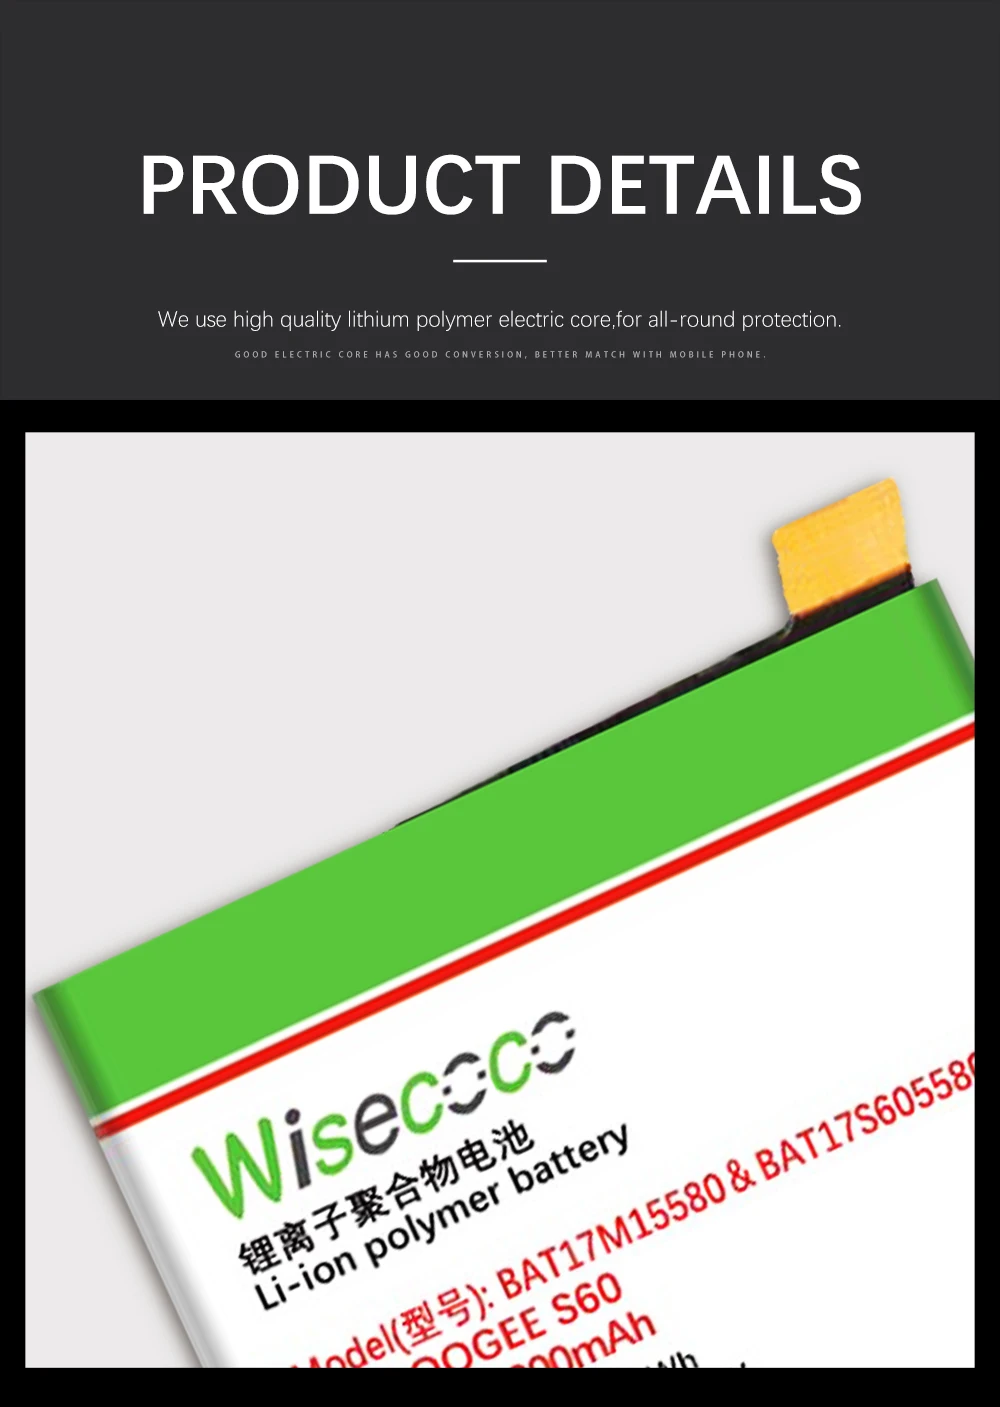 WISECOCO 7000mAh BAT17M15580 BAT173605580 батарея для телефона Doogee S60 новейшее производство Высококачественная батарея+ номер отслеживания